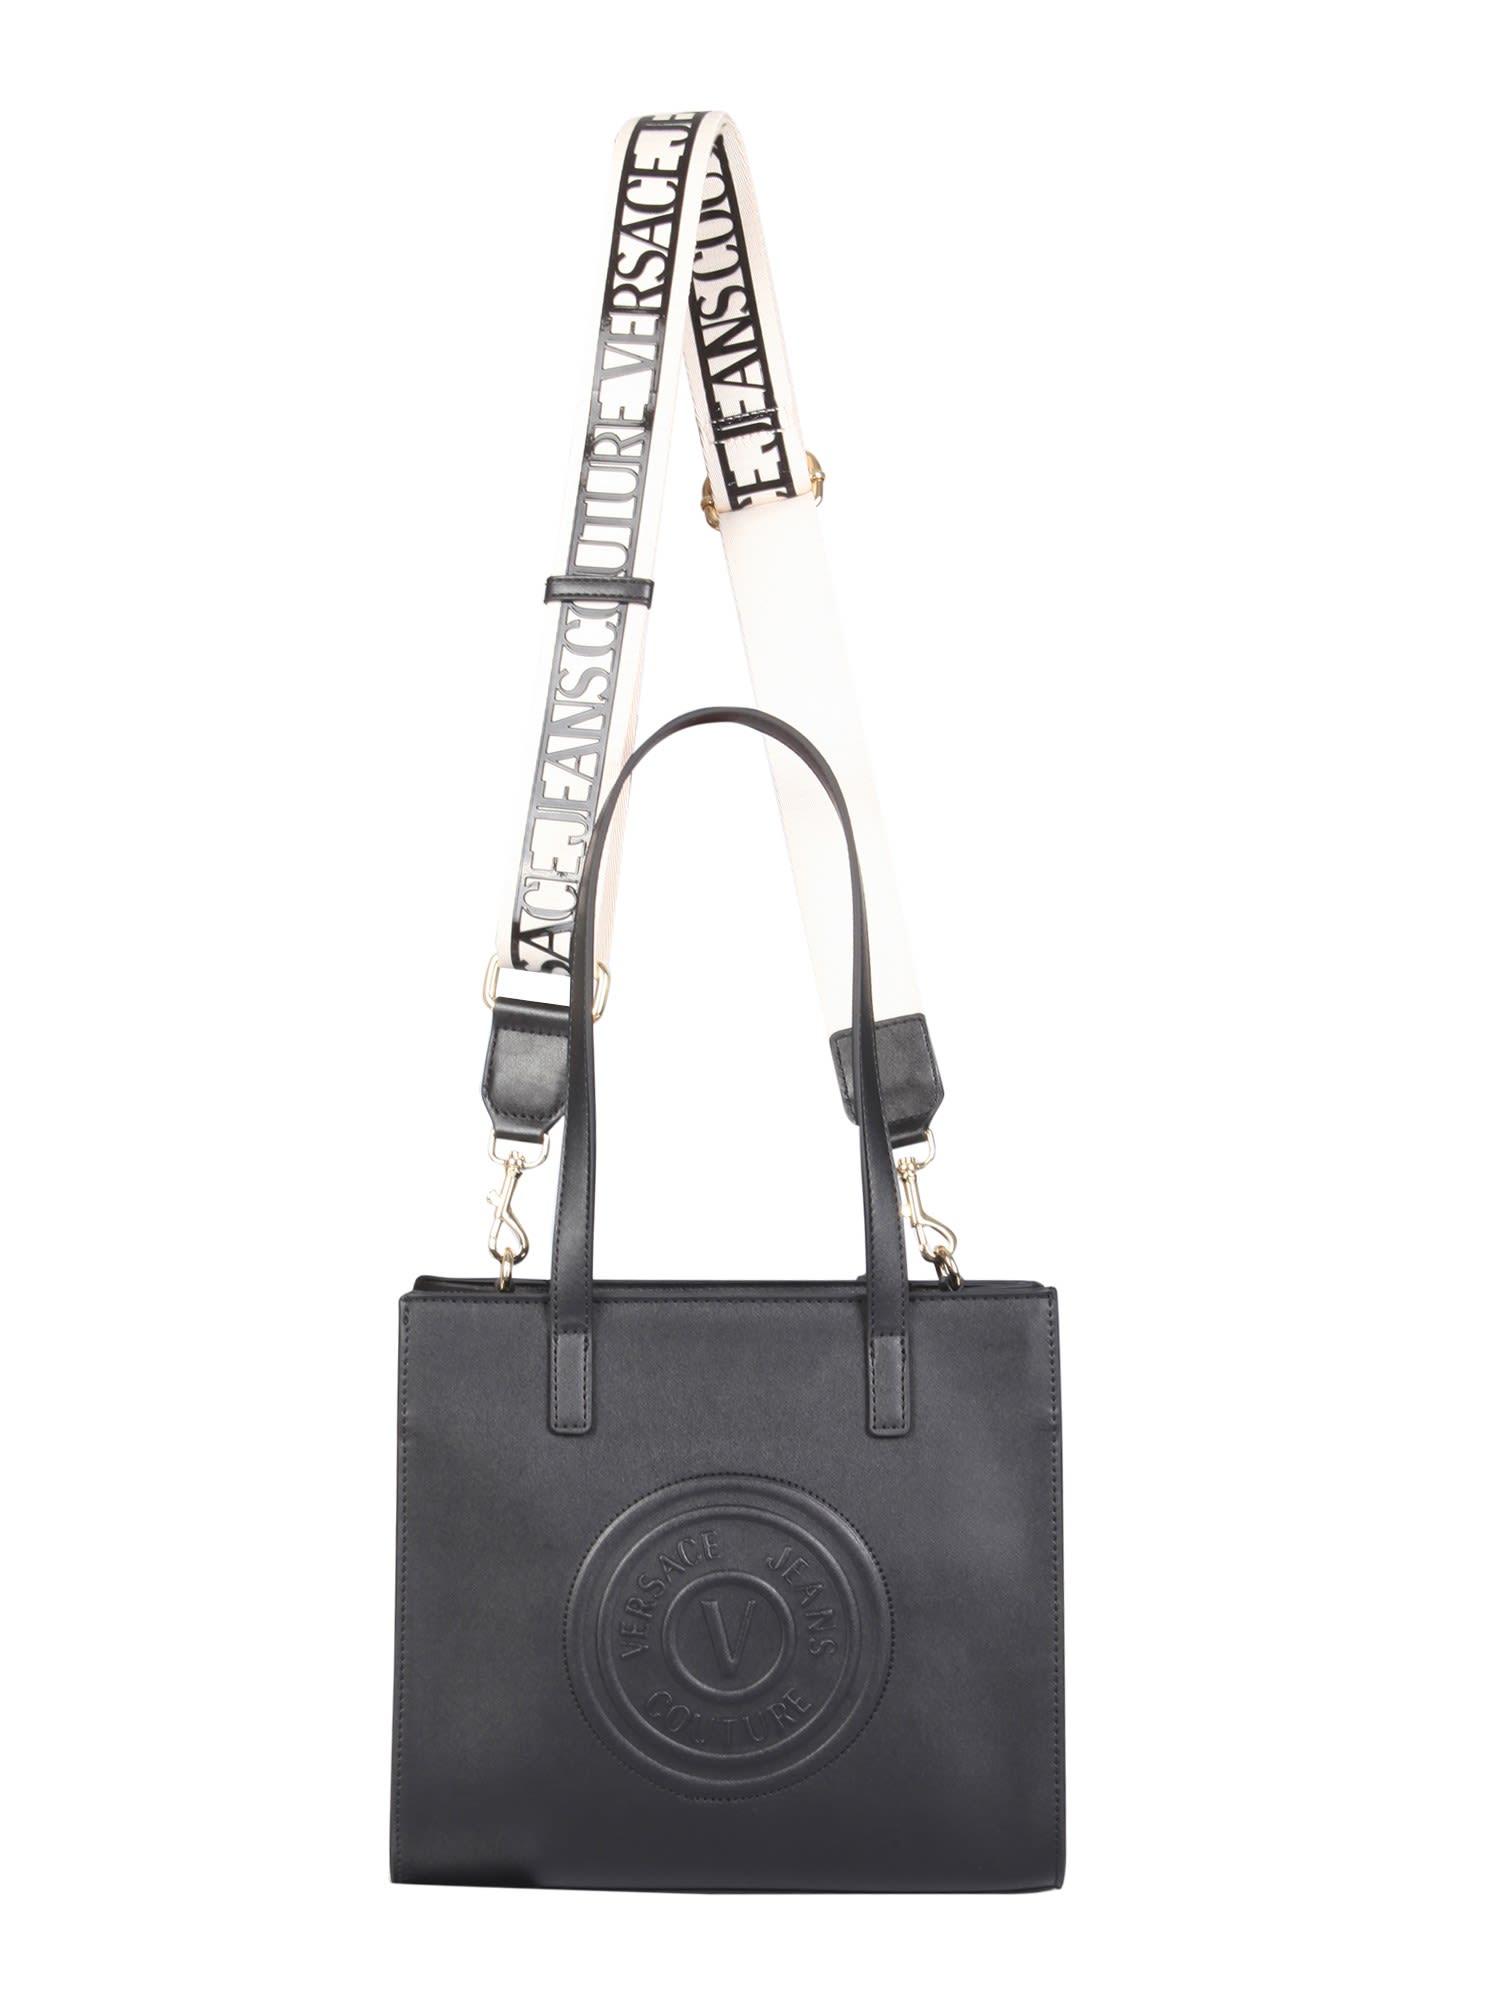 Versace Jeans Couture Black Couture V-Emblem Bag - ShopStyle